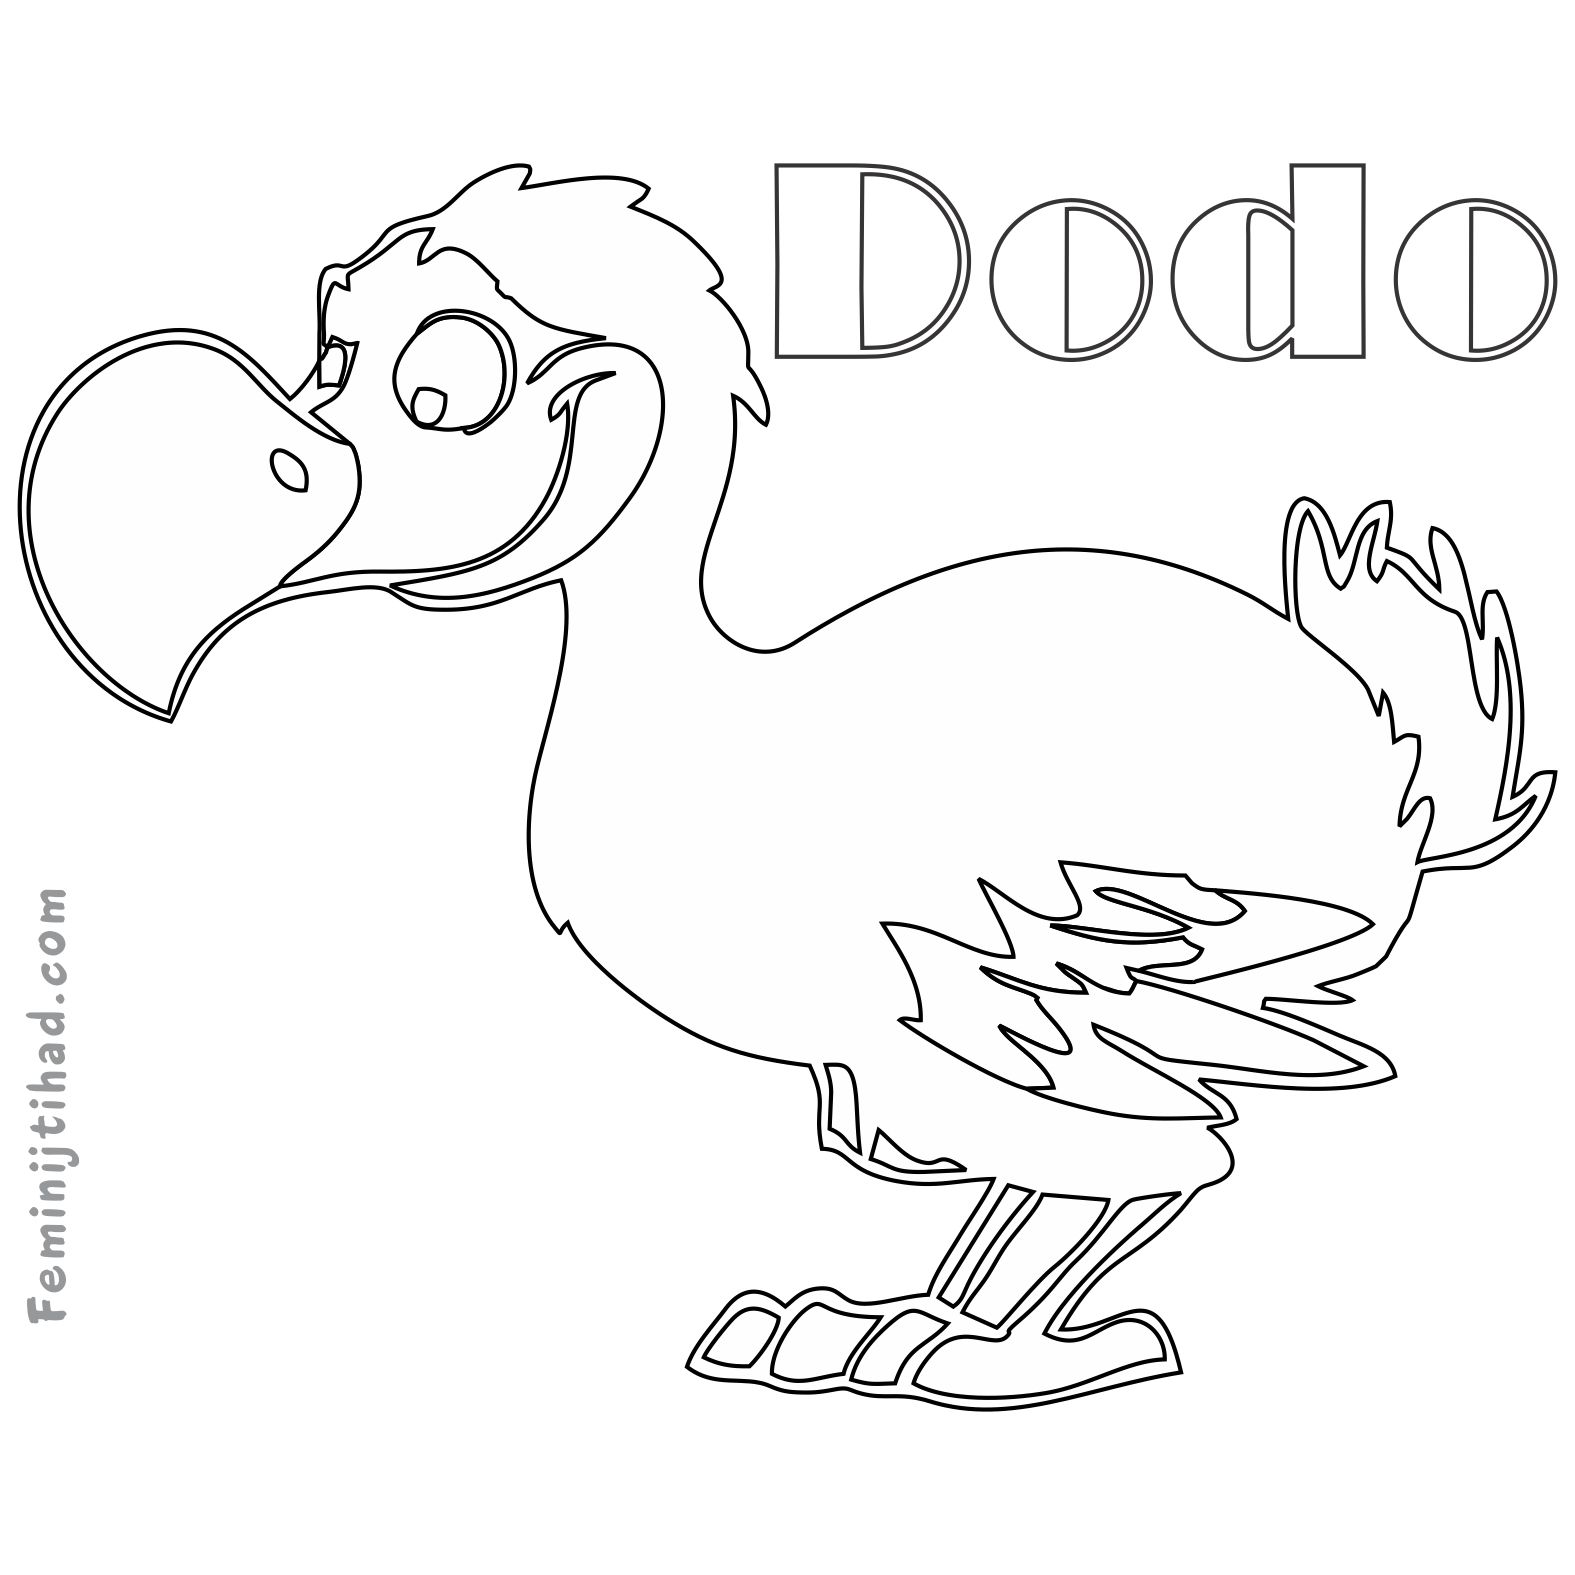 dodo bird coloring page easy